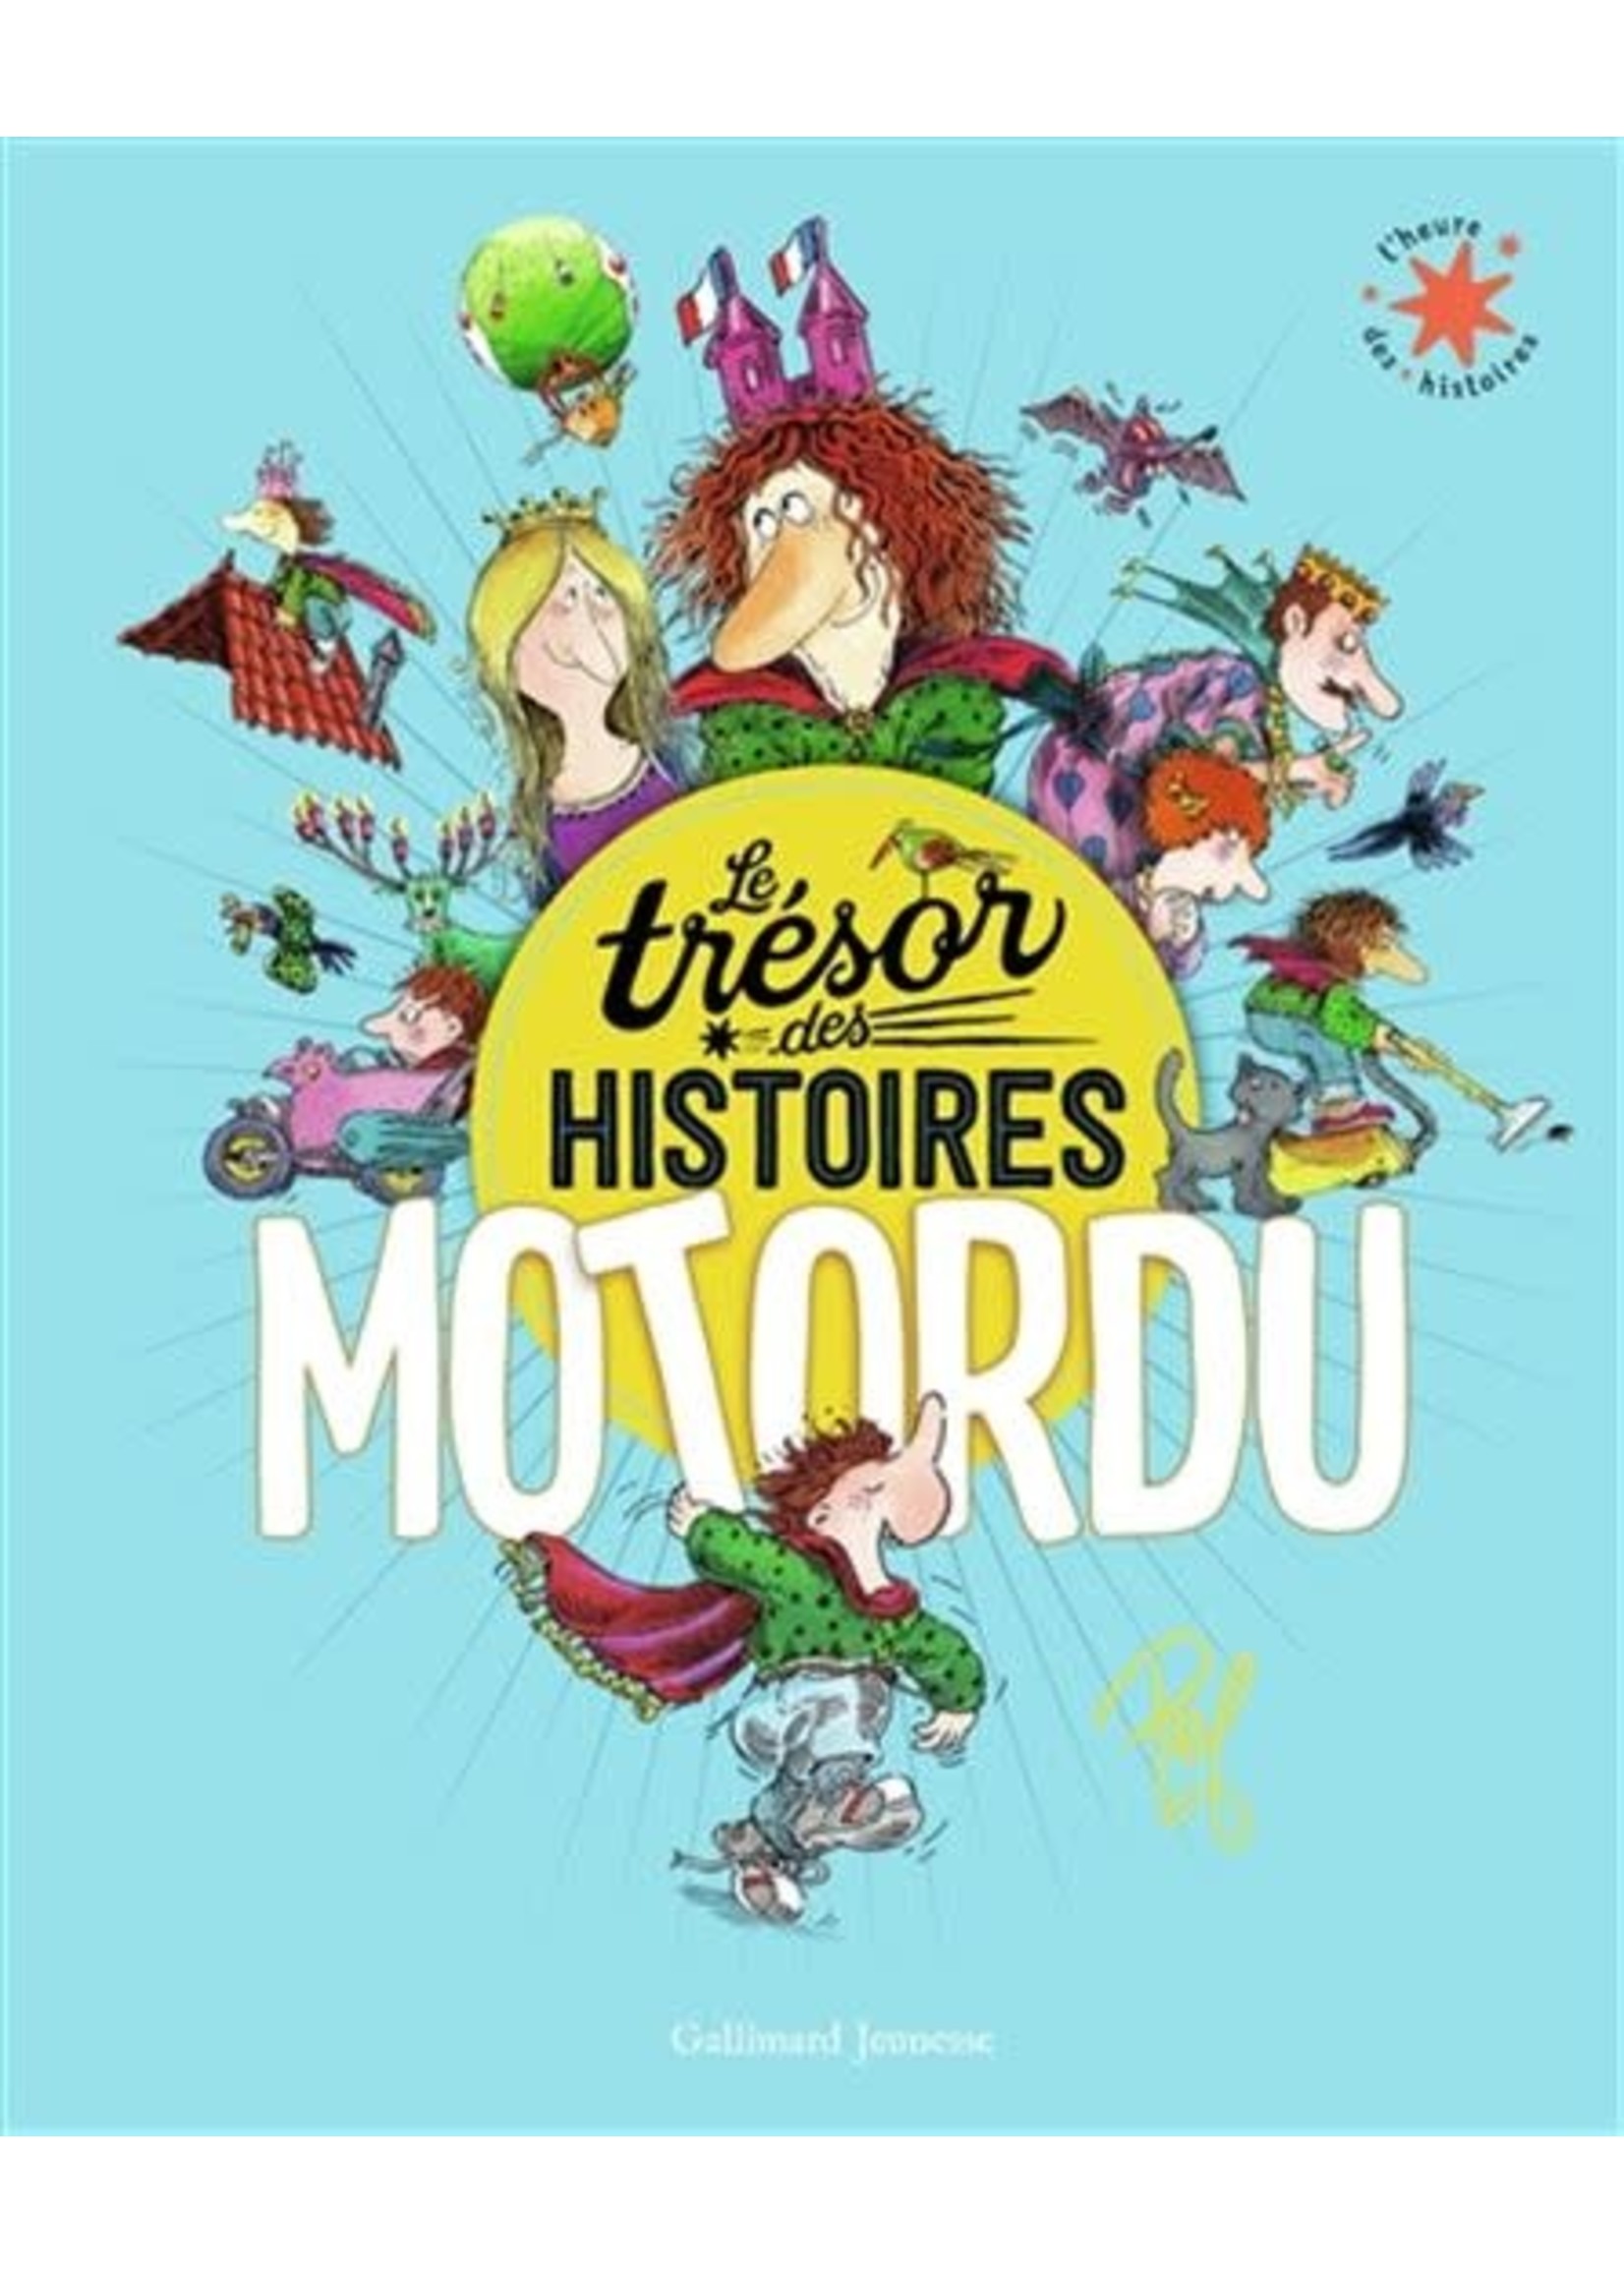 Le trésor des histoires Mortordu by Pef